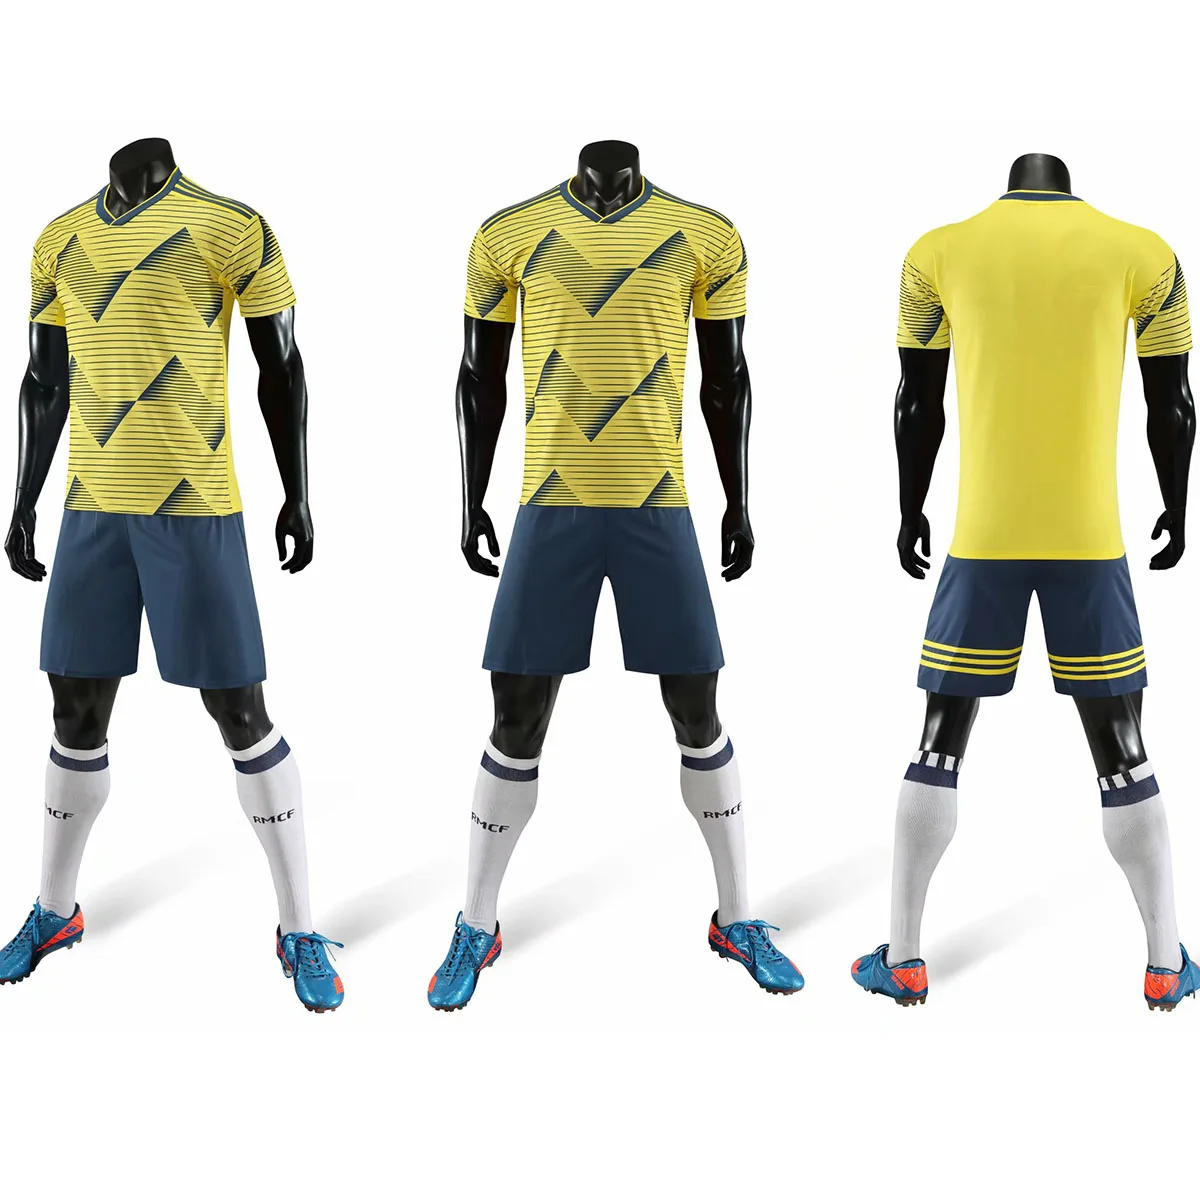 19-20 новая национальная команда Футбол Джерси логотип Футбольная форма на заказ Униформа костюм мужской футбольный набор пользовательское имя номер - Цвет: Model 8